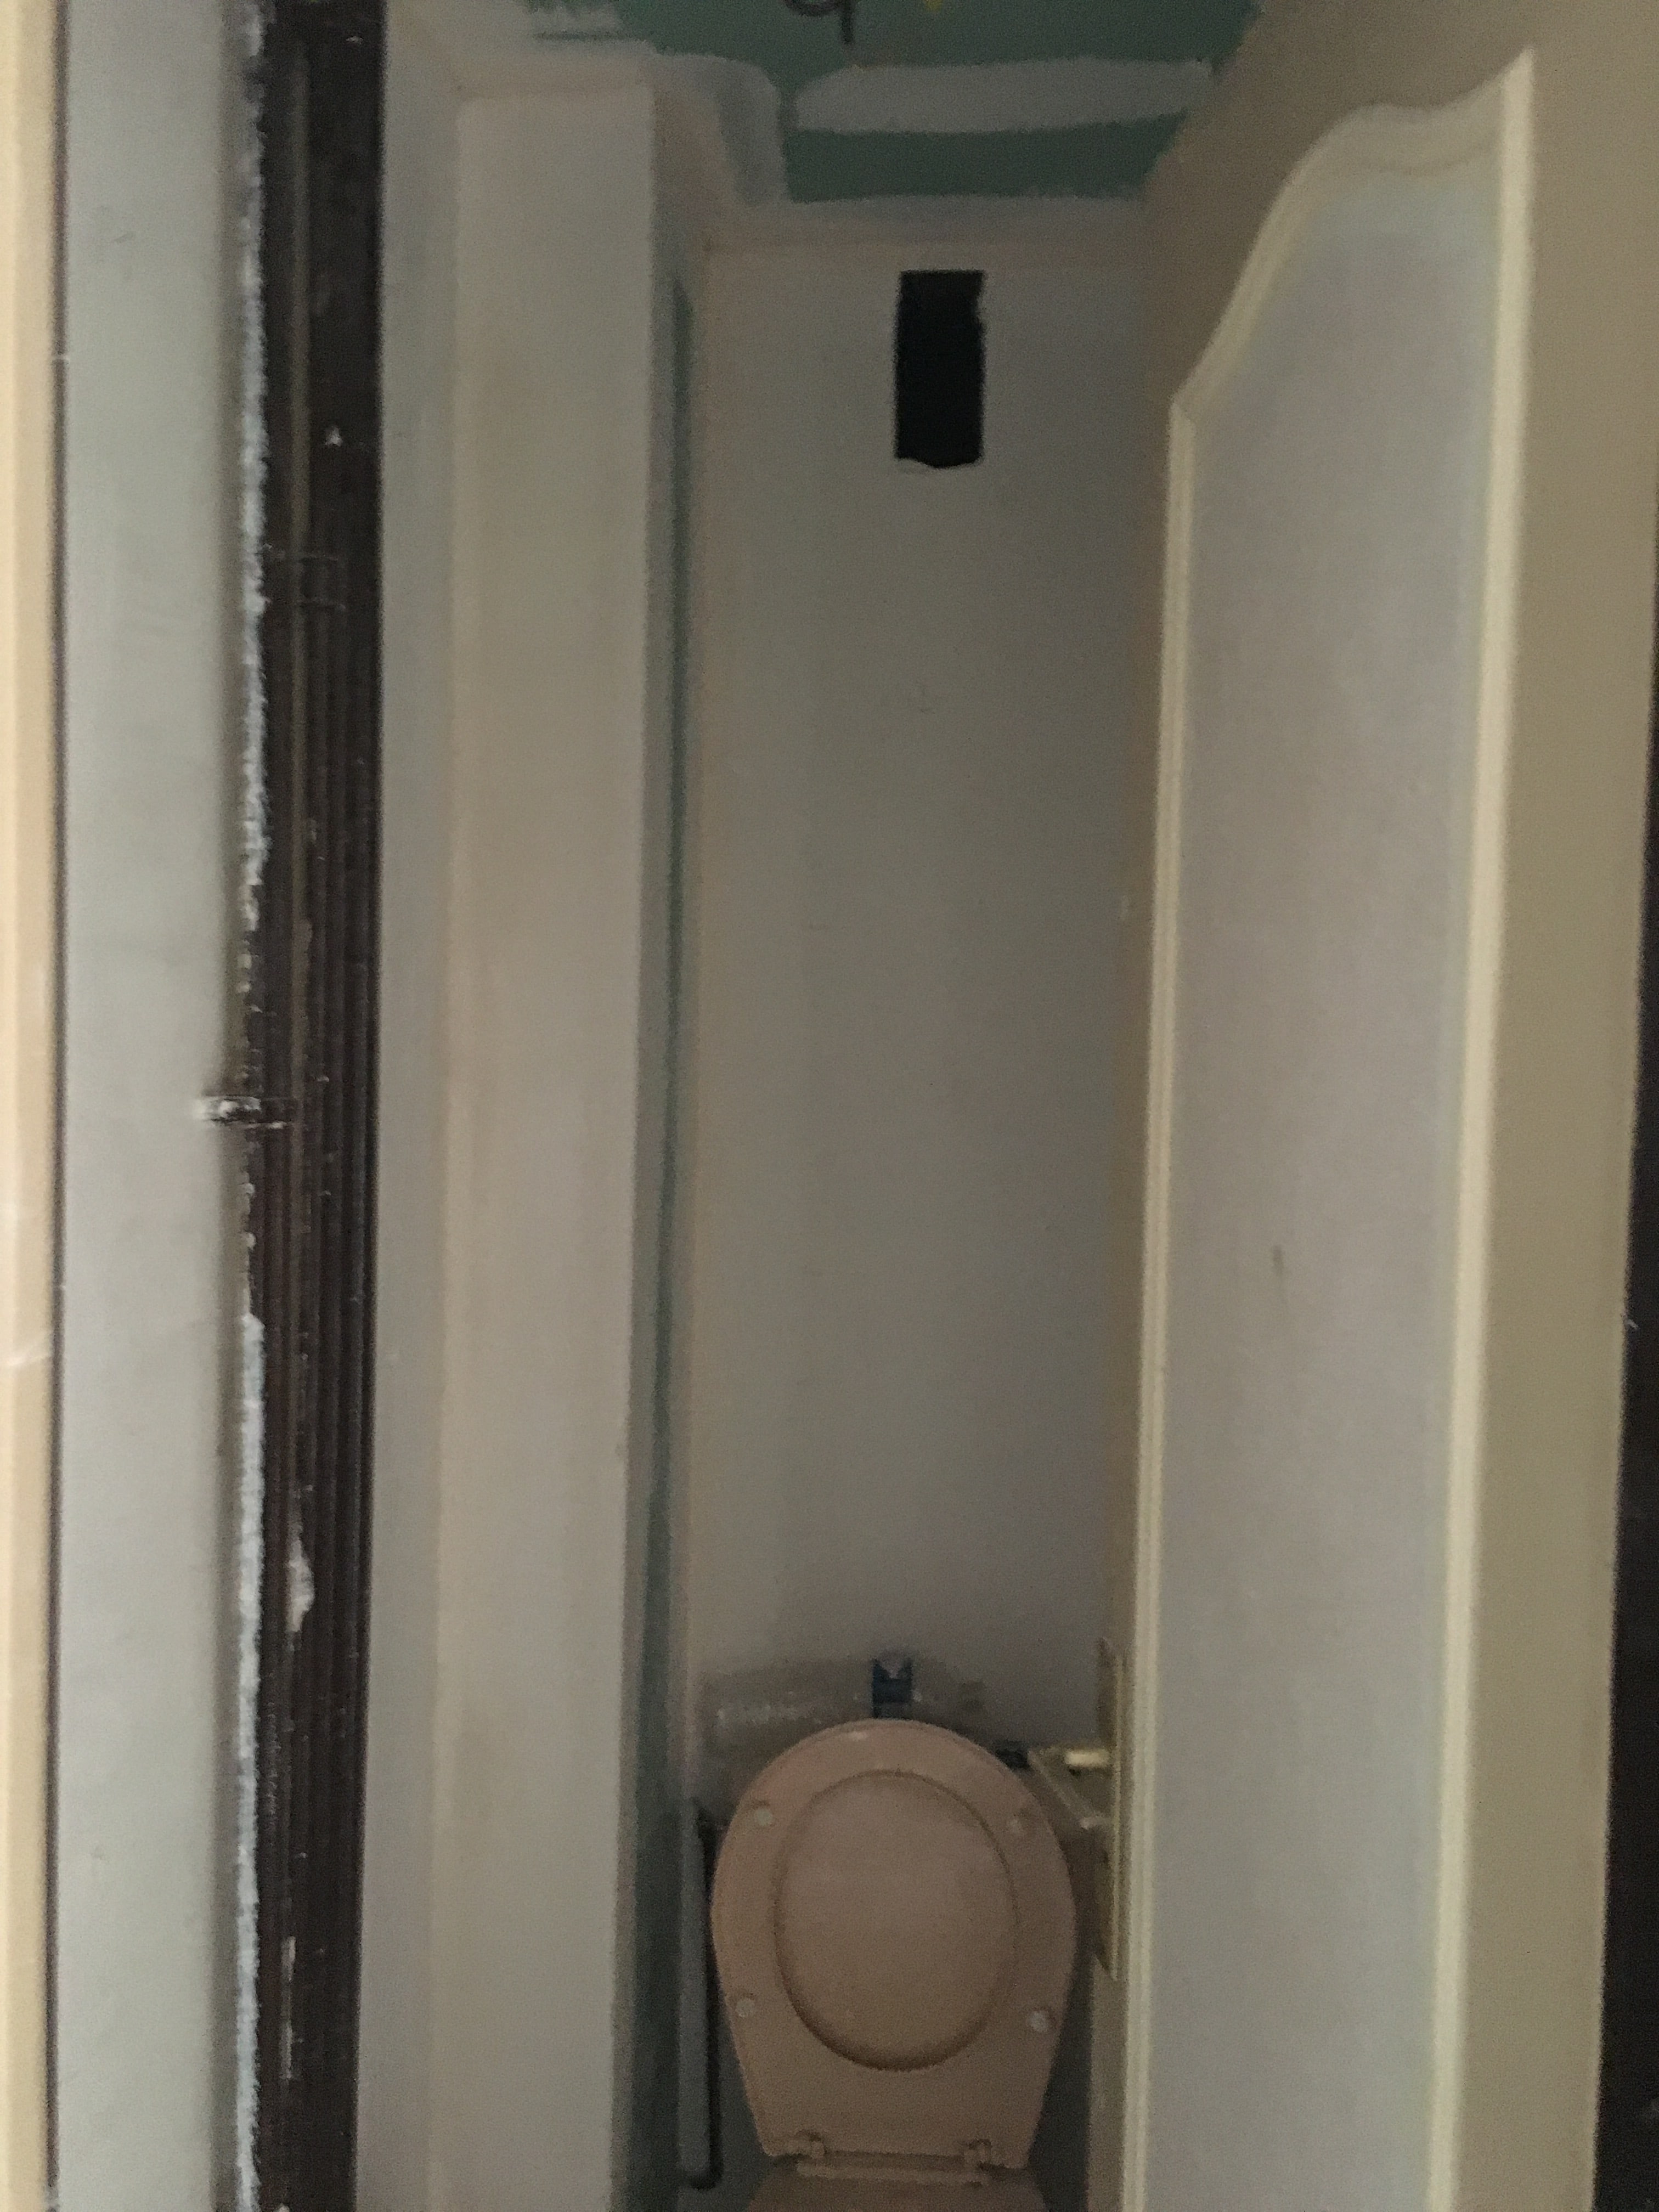 travaux-de-renovation-peinture-menuiserie-platrerie-villiers-sur-marne-toilette-wc-1-maghawry-texas-batiment-rge-min